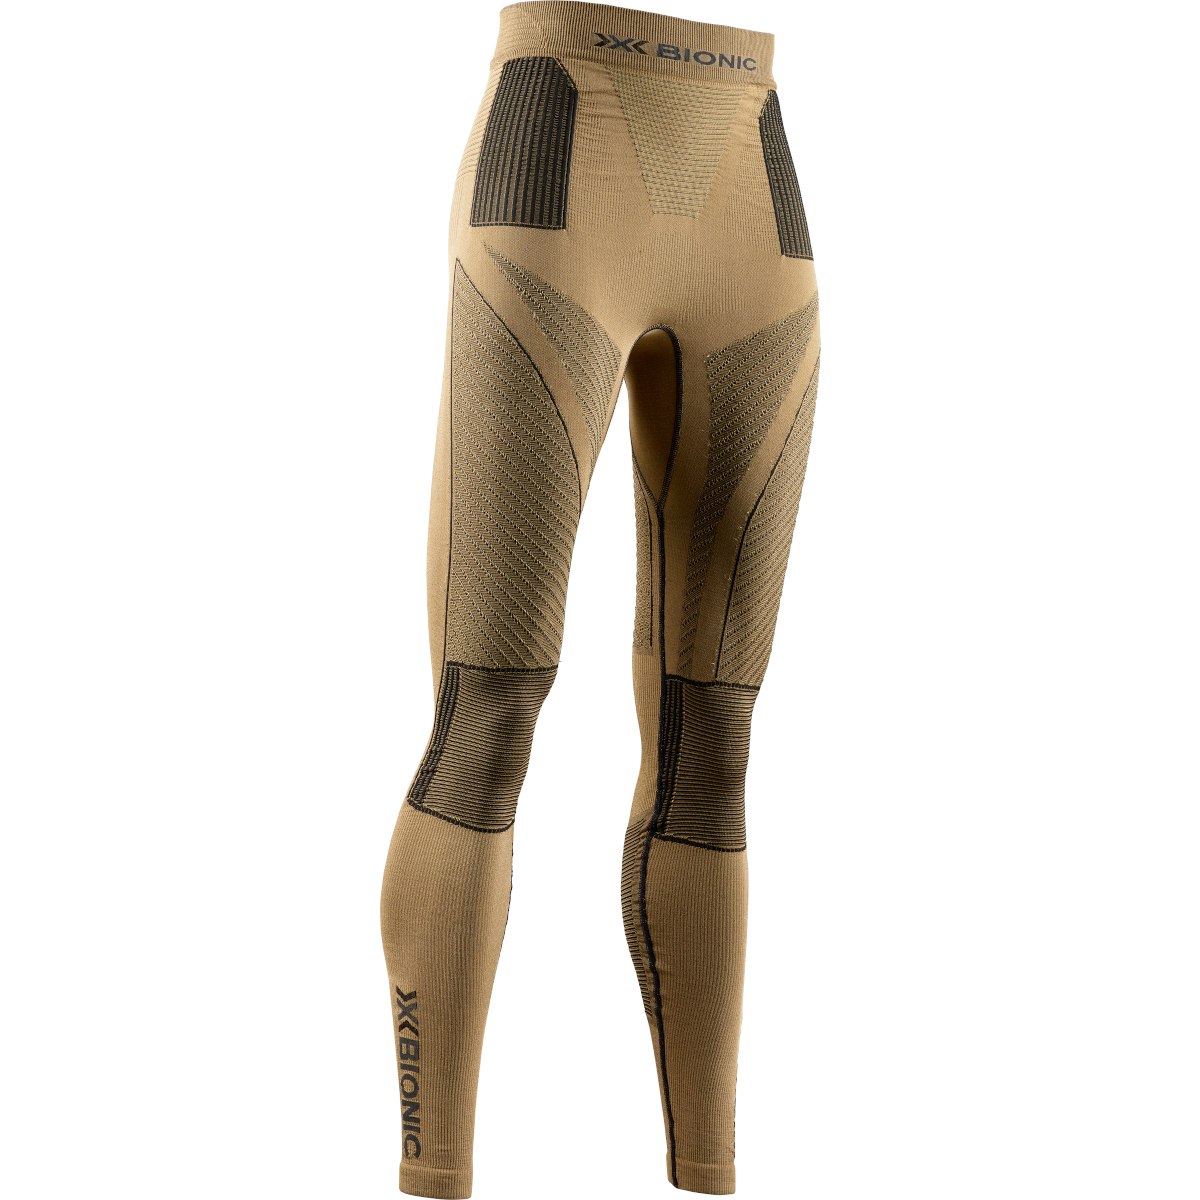 Produktbild von X-Bionic Radiactor 4.0 Damen Unterhose lang - gold/black